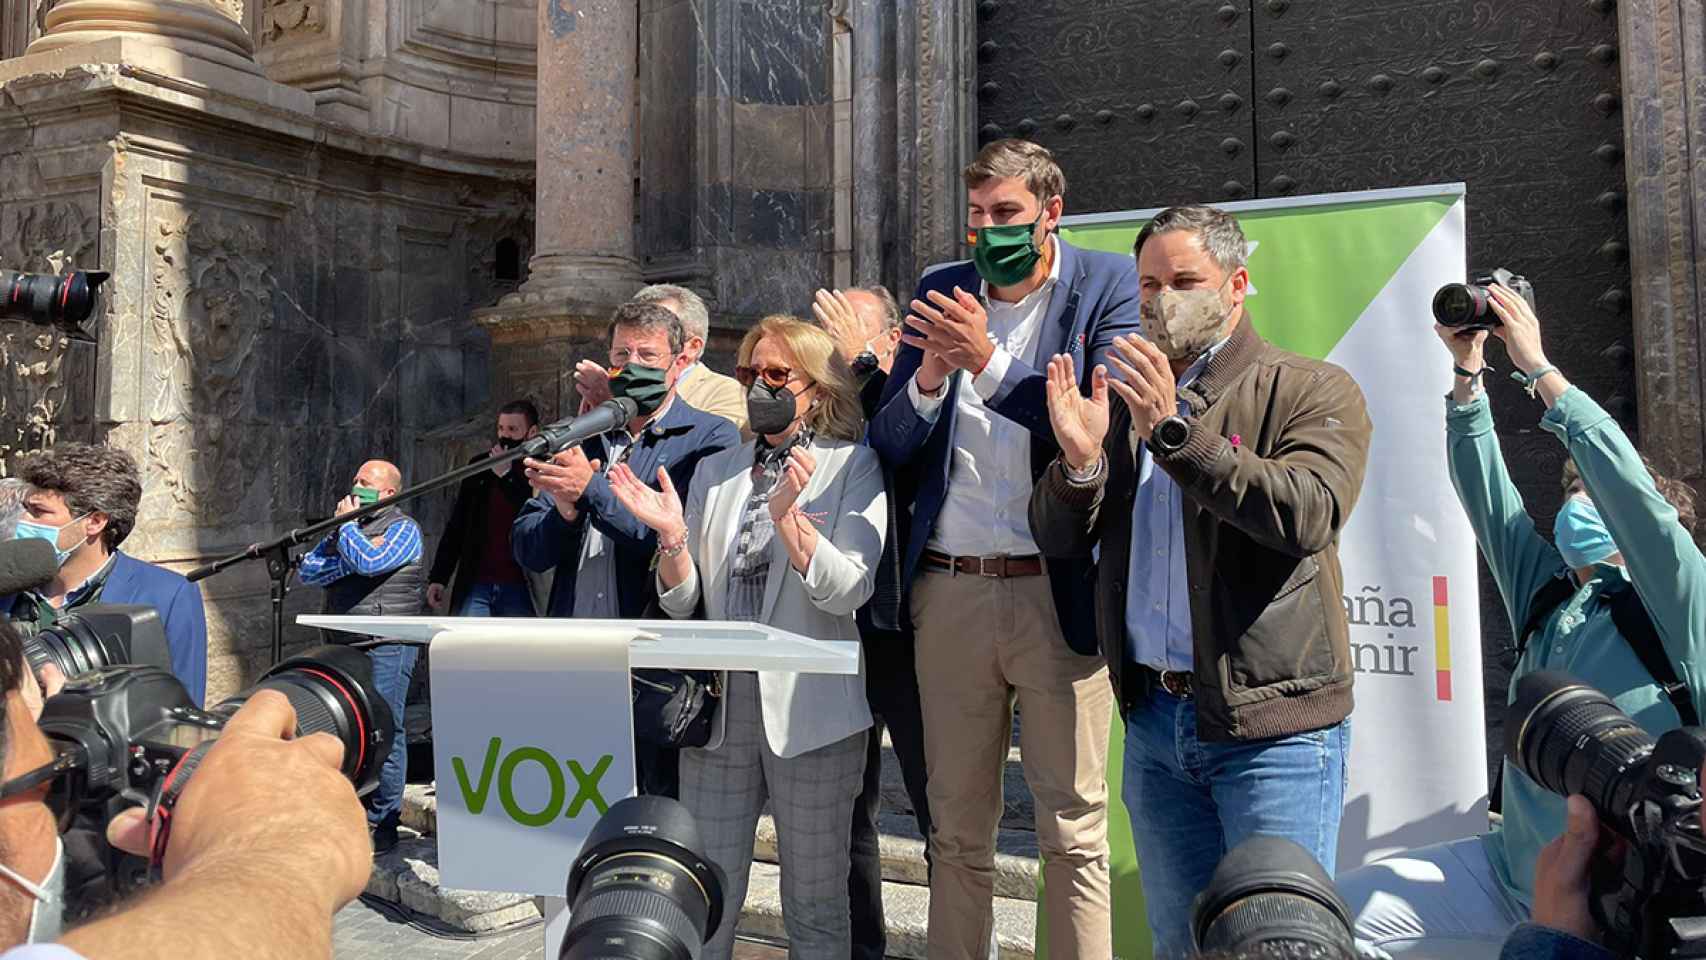 José Ángel Antelo, presidente de Vox en Murcia, y Santiago Abascal, líder nacional de Vox, durante la rueda de prensa que ofrecieron en la Catedral cuando se presentó la moción de censura al PP de Murcia.